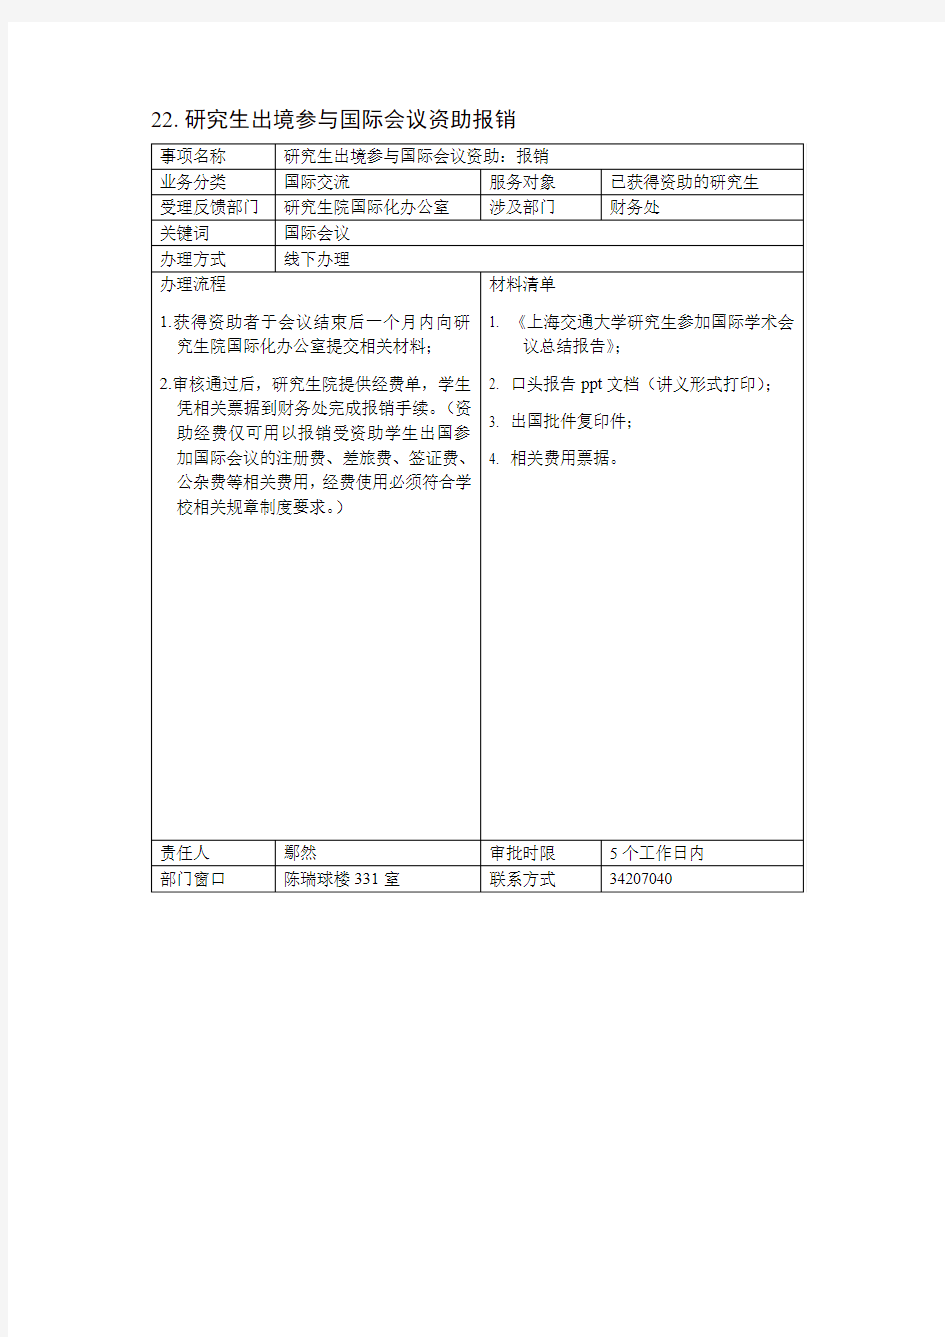 上海交通大学研究生参加重要国际学术会议-申请报销流程